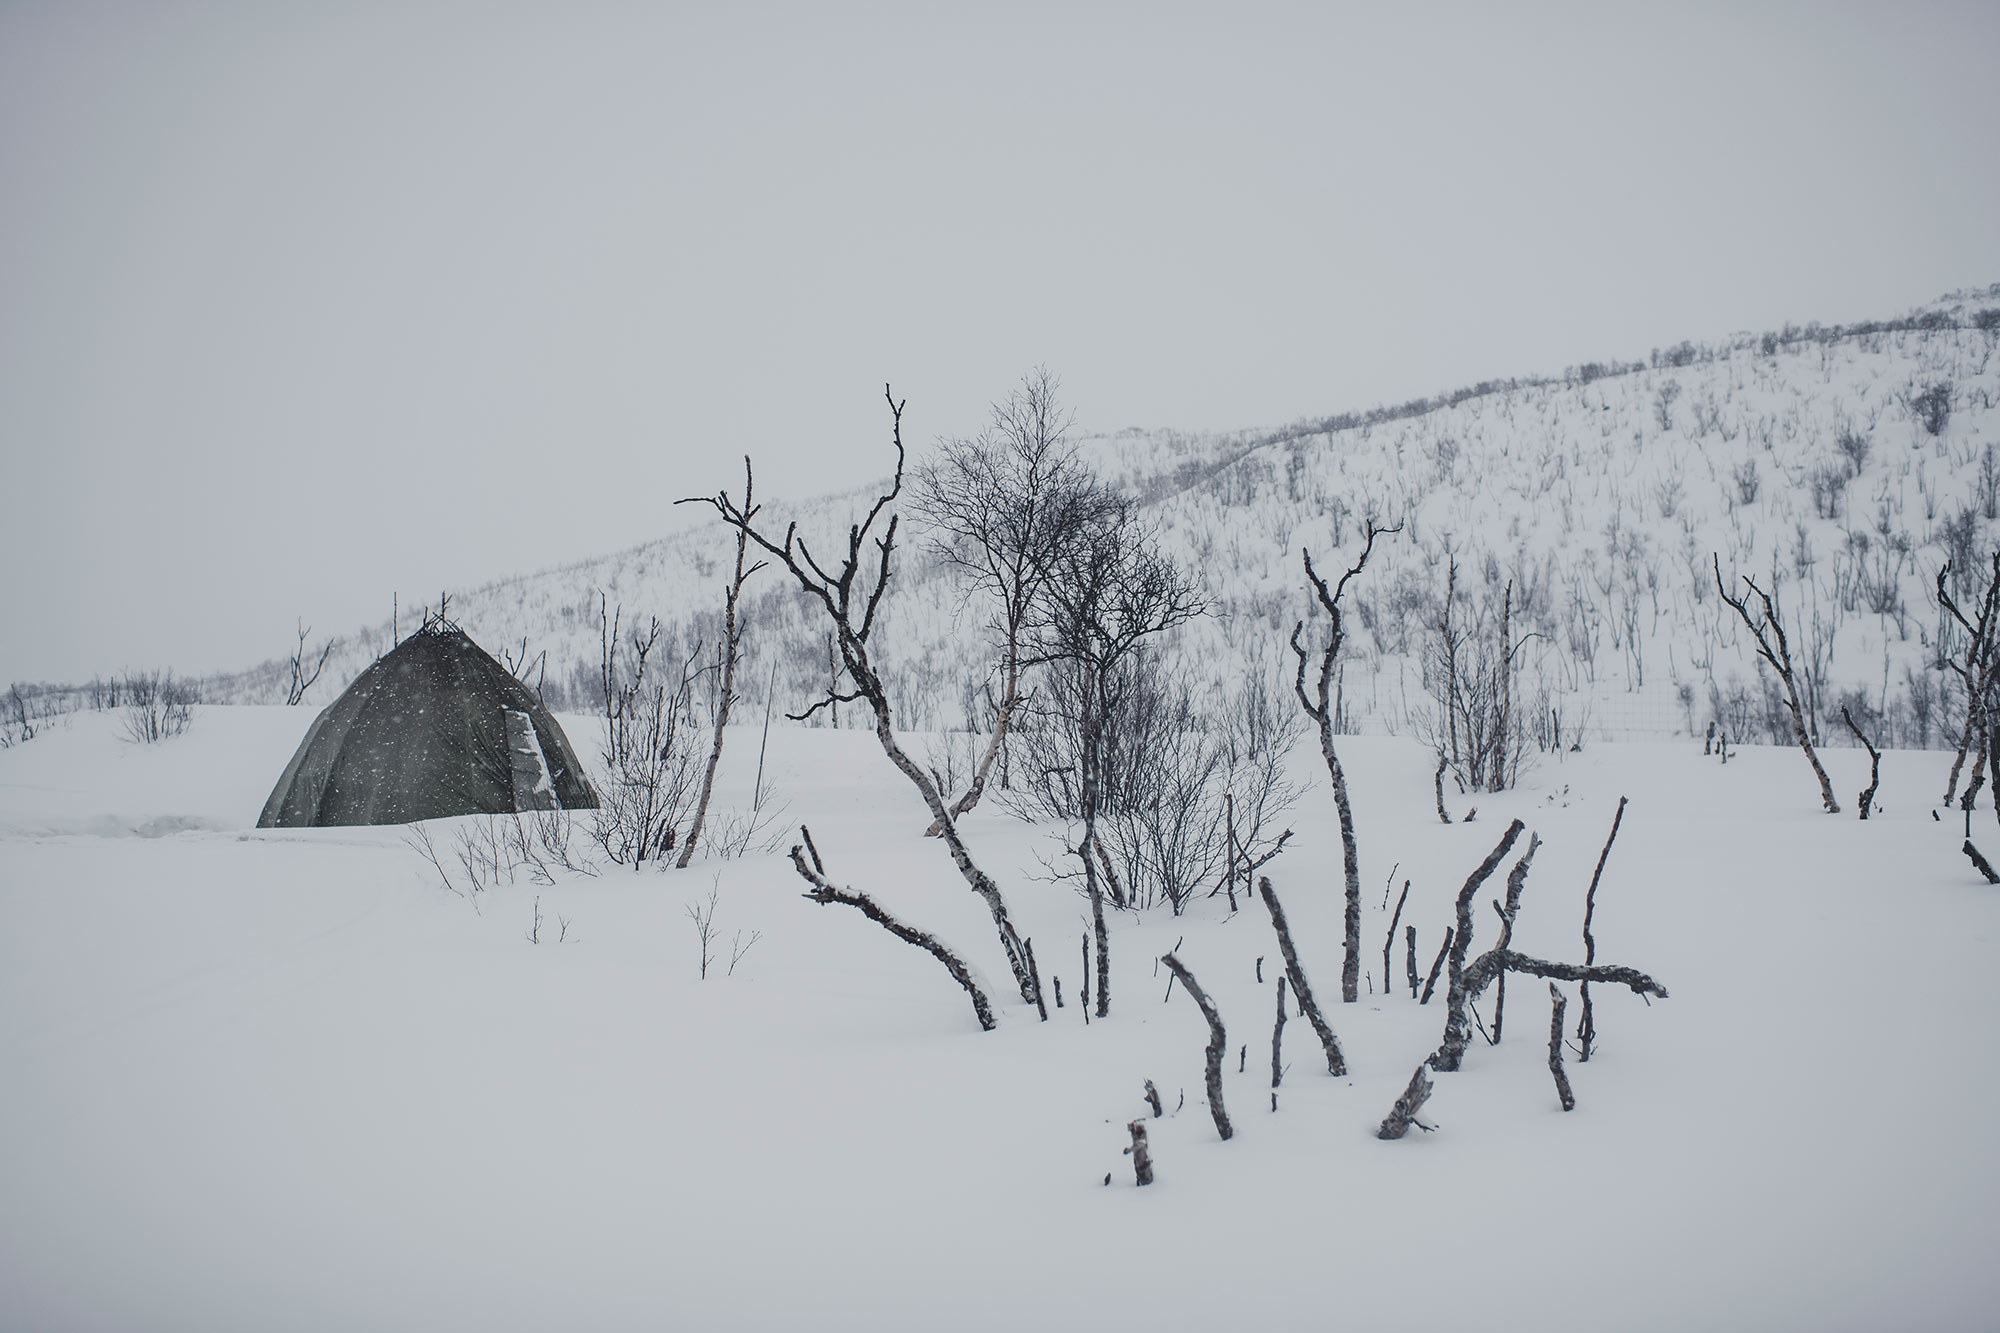 Outside of the lavvu in snowy landscape